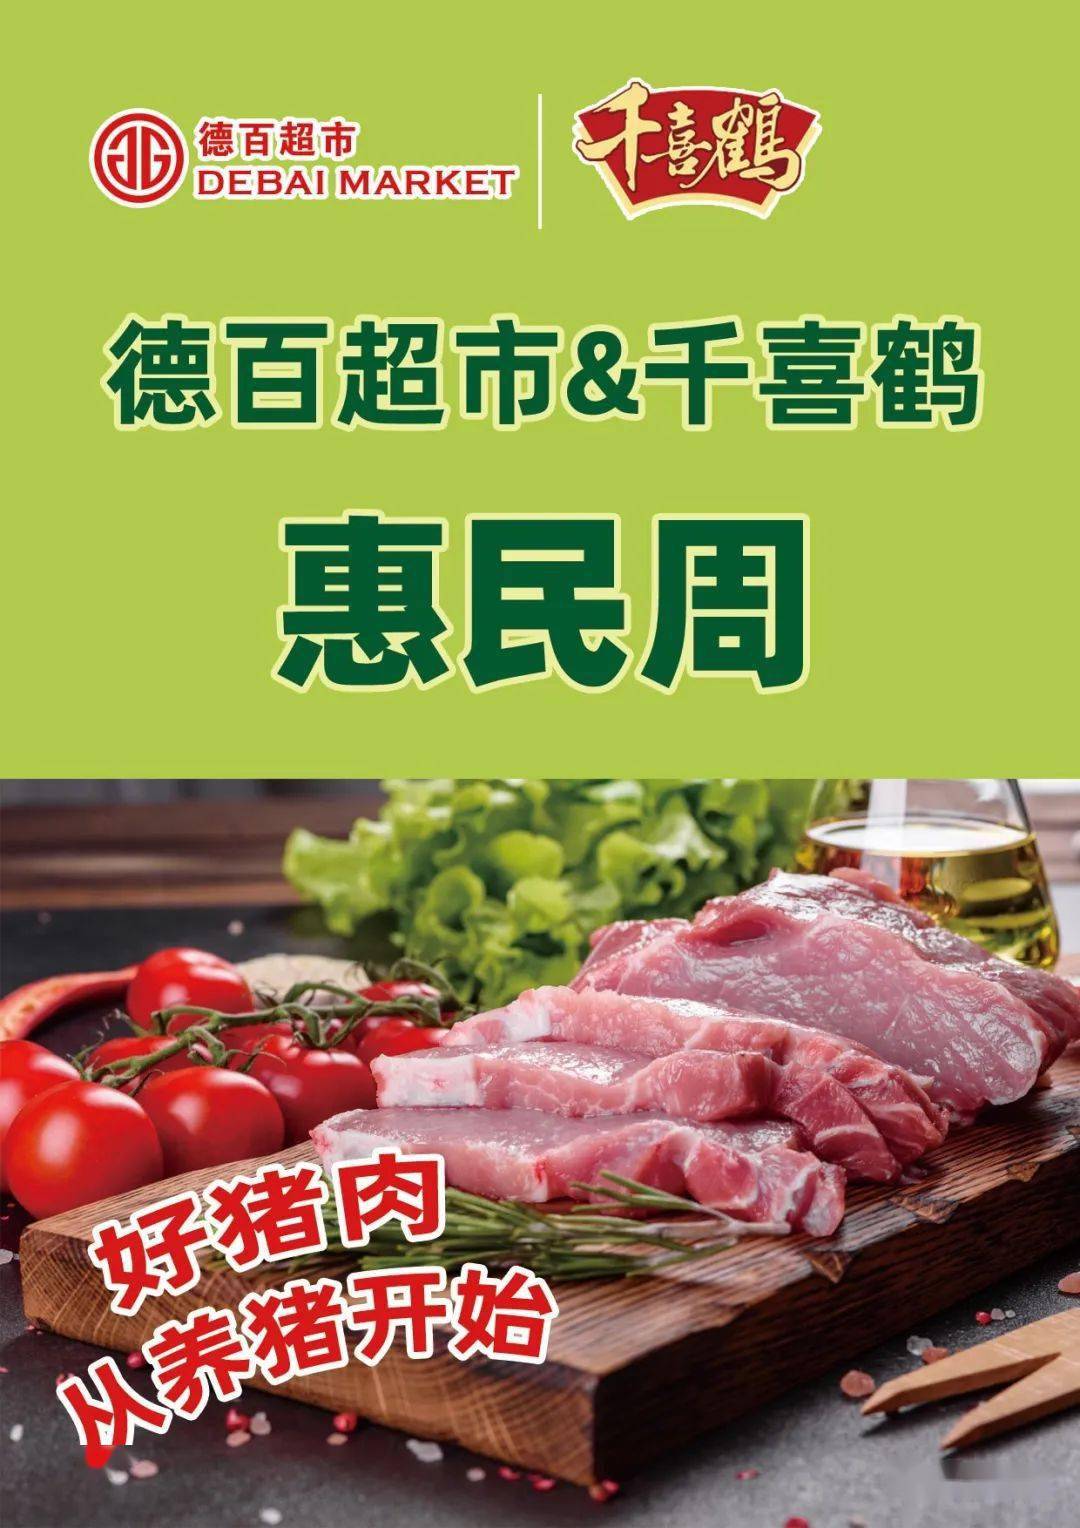 鲜肉来袭|德百超市&千喜鹤惠民福利大放送!